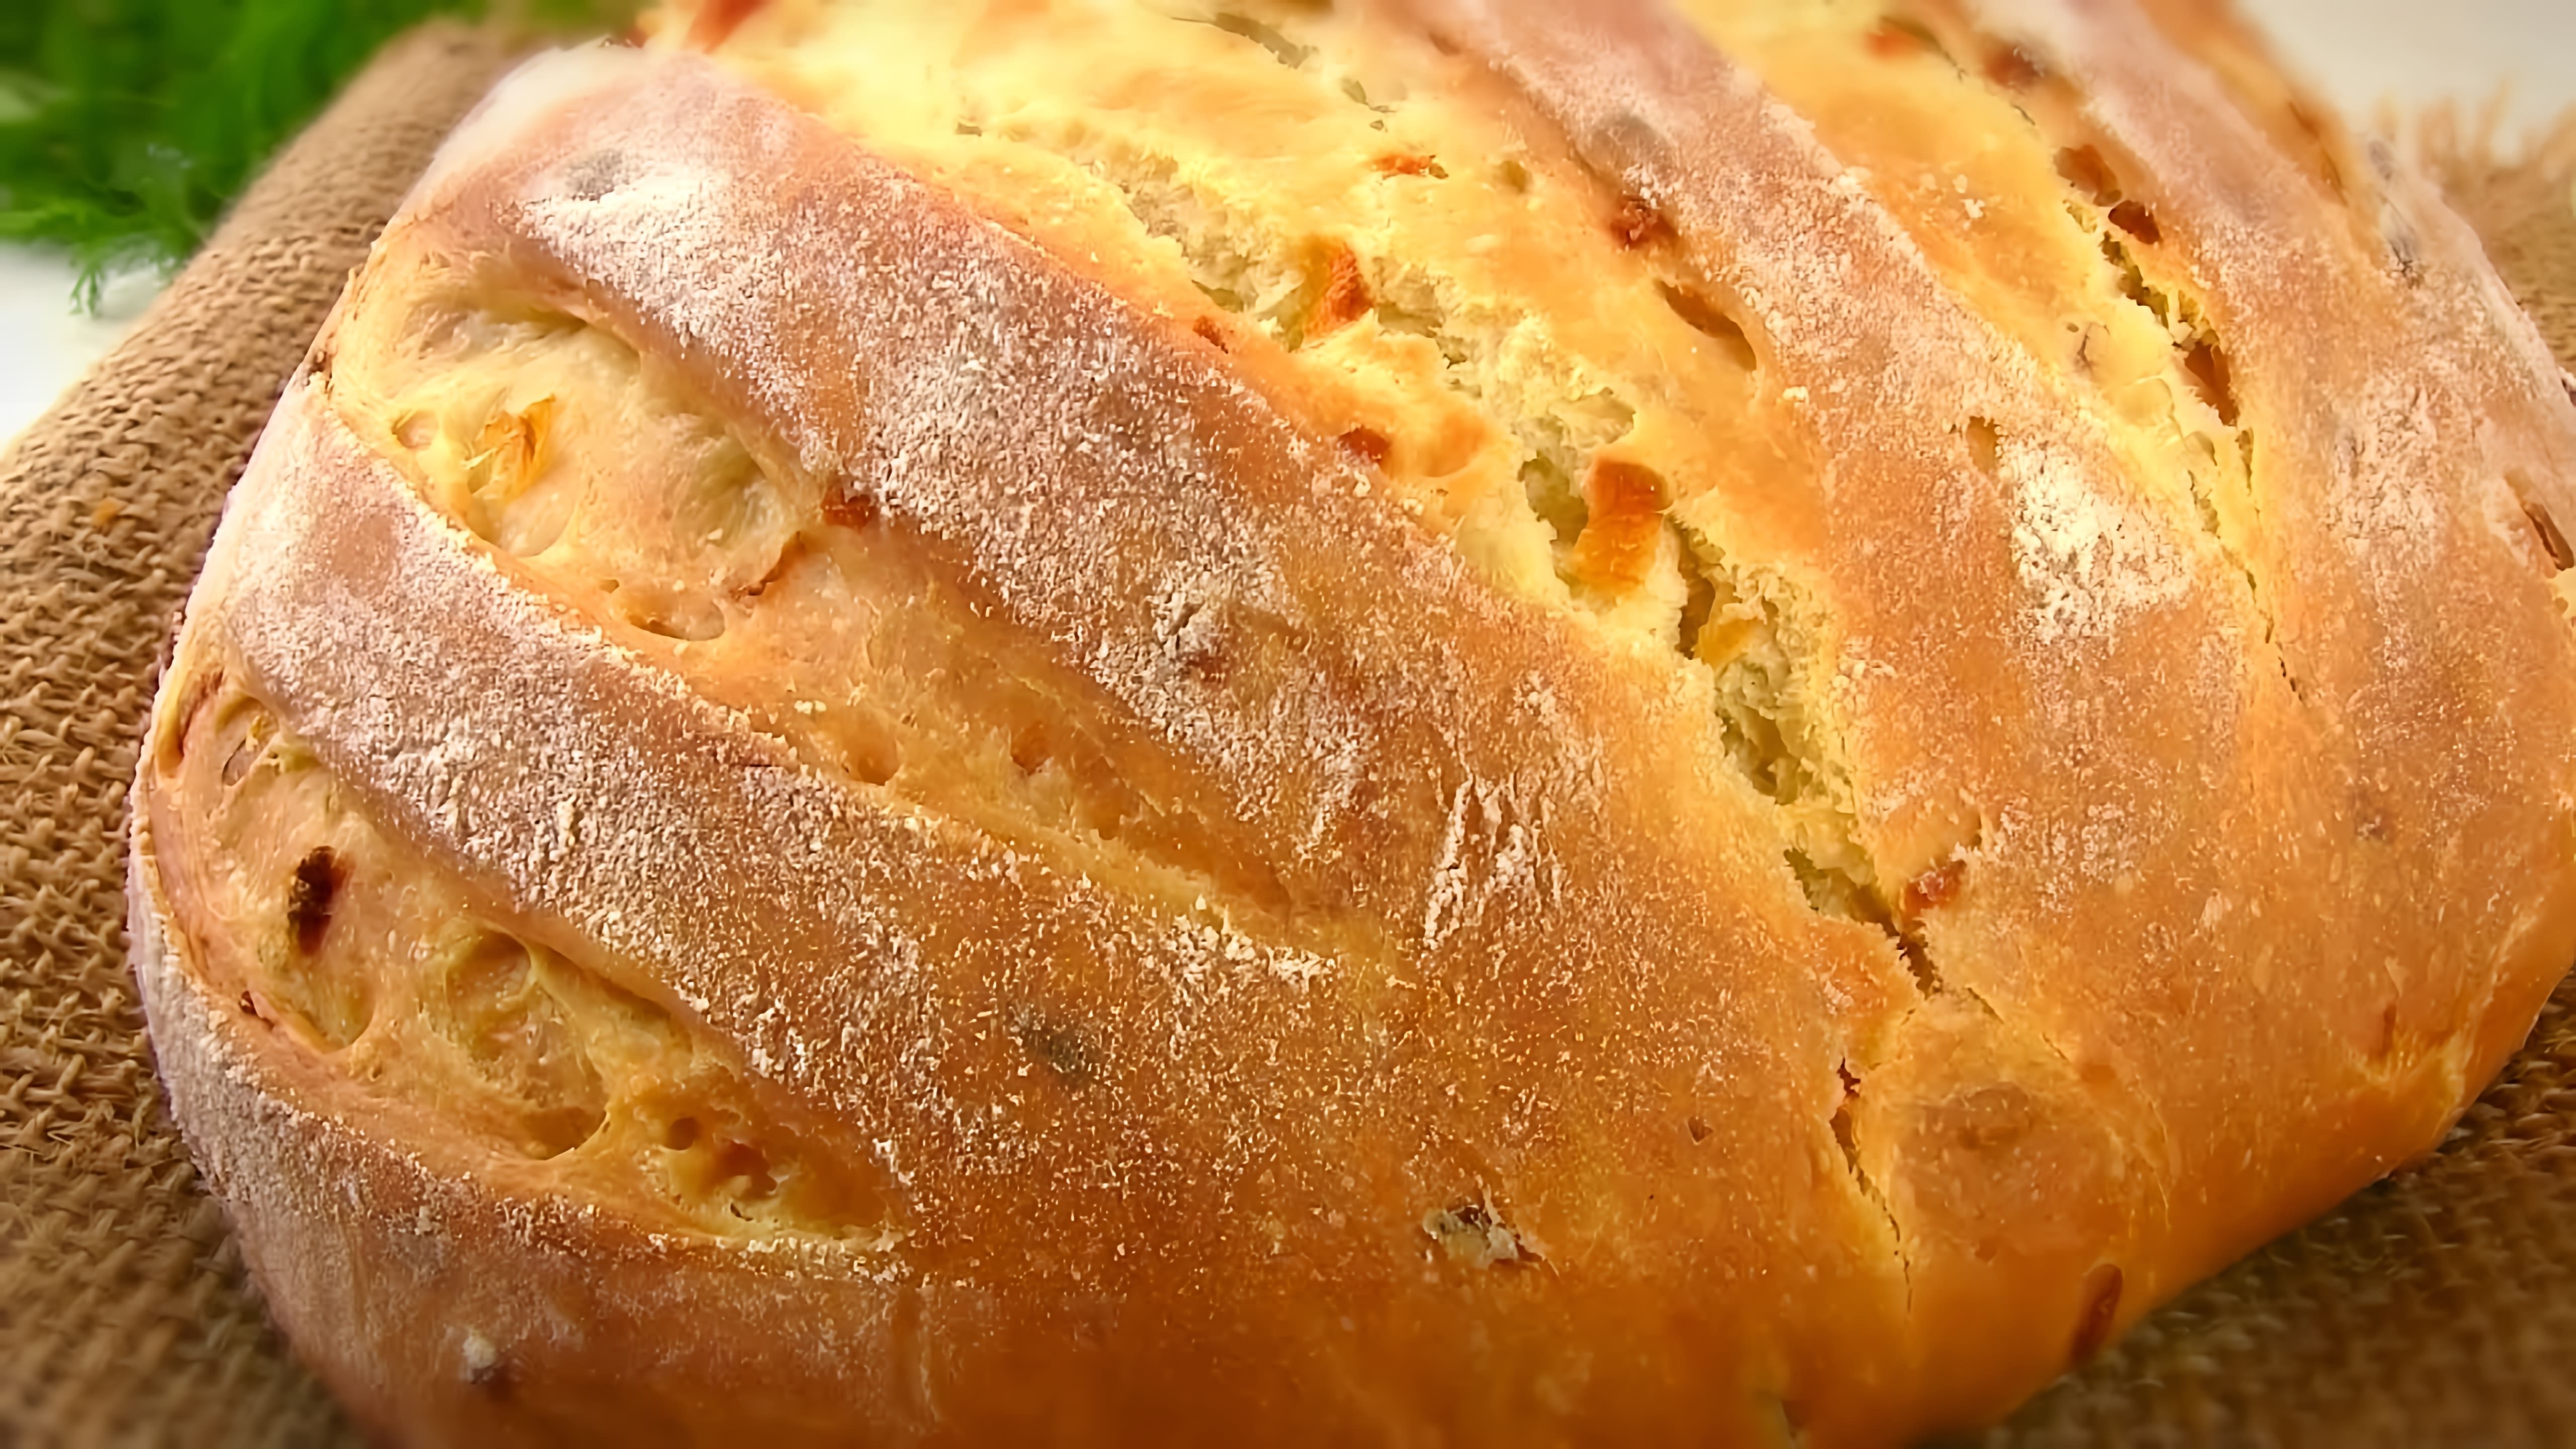 "Домашний луковый хлеб - это просто чудо!" - так называется видео-ролик, который я хочу вам показать